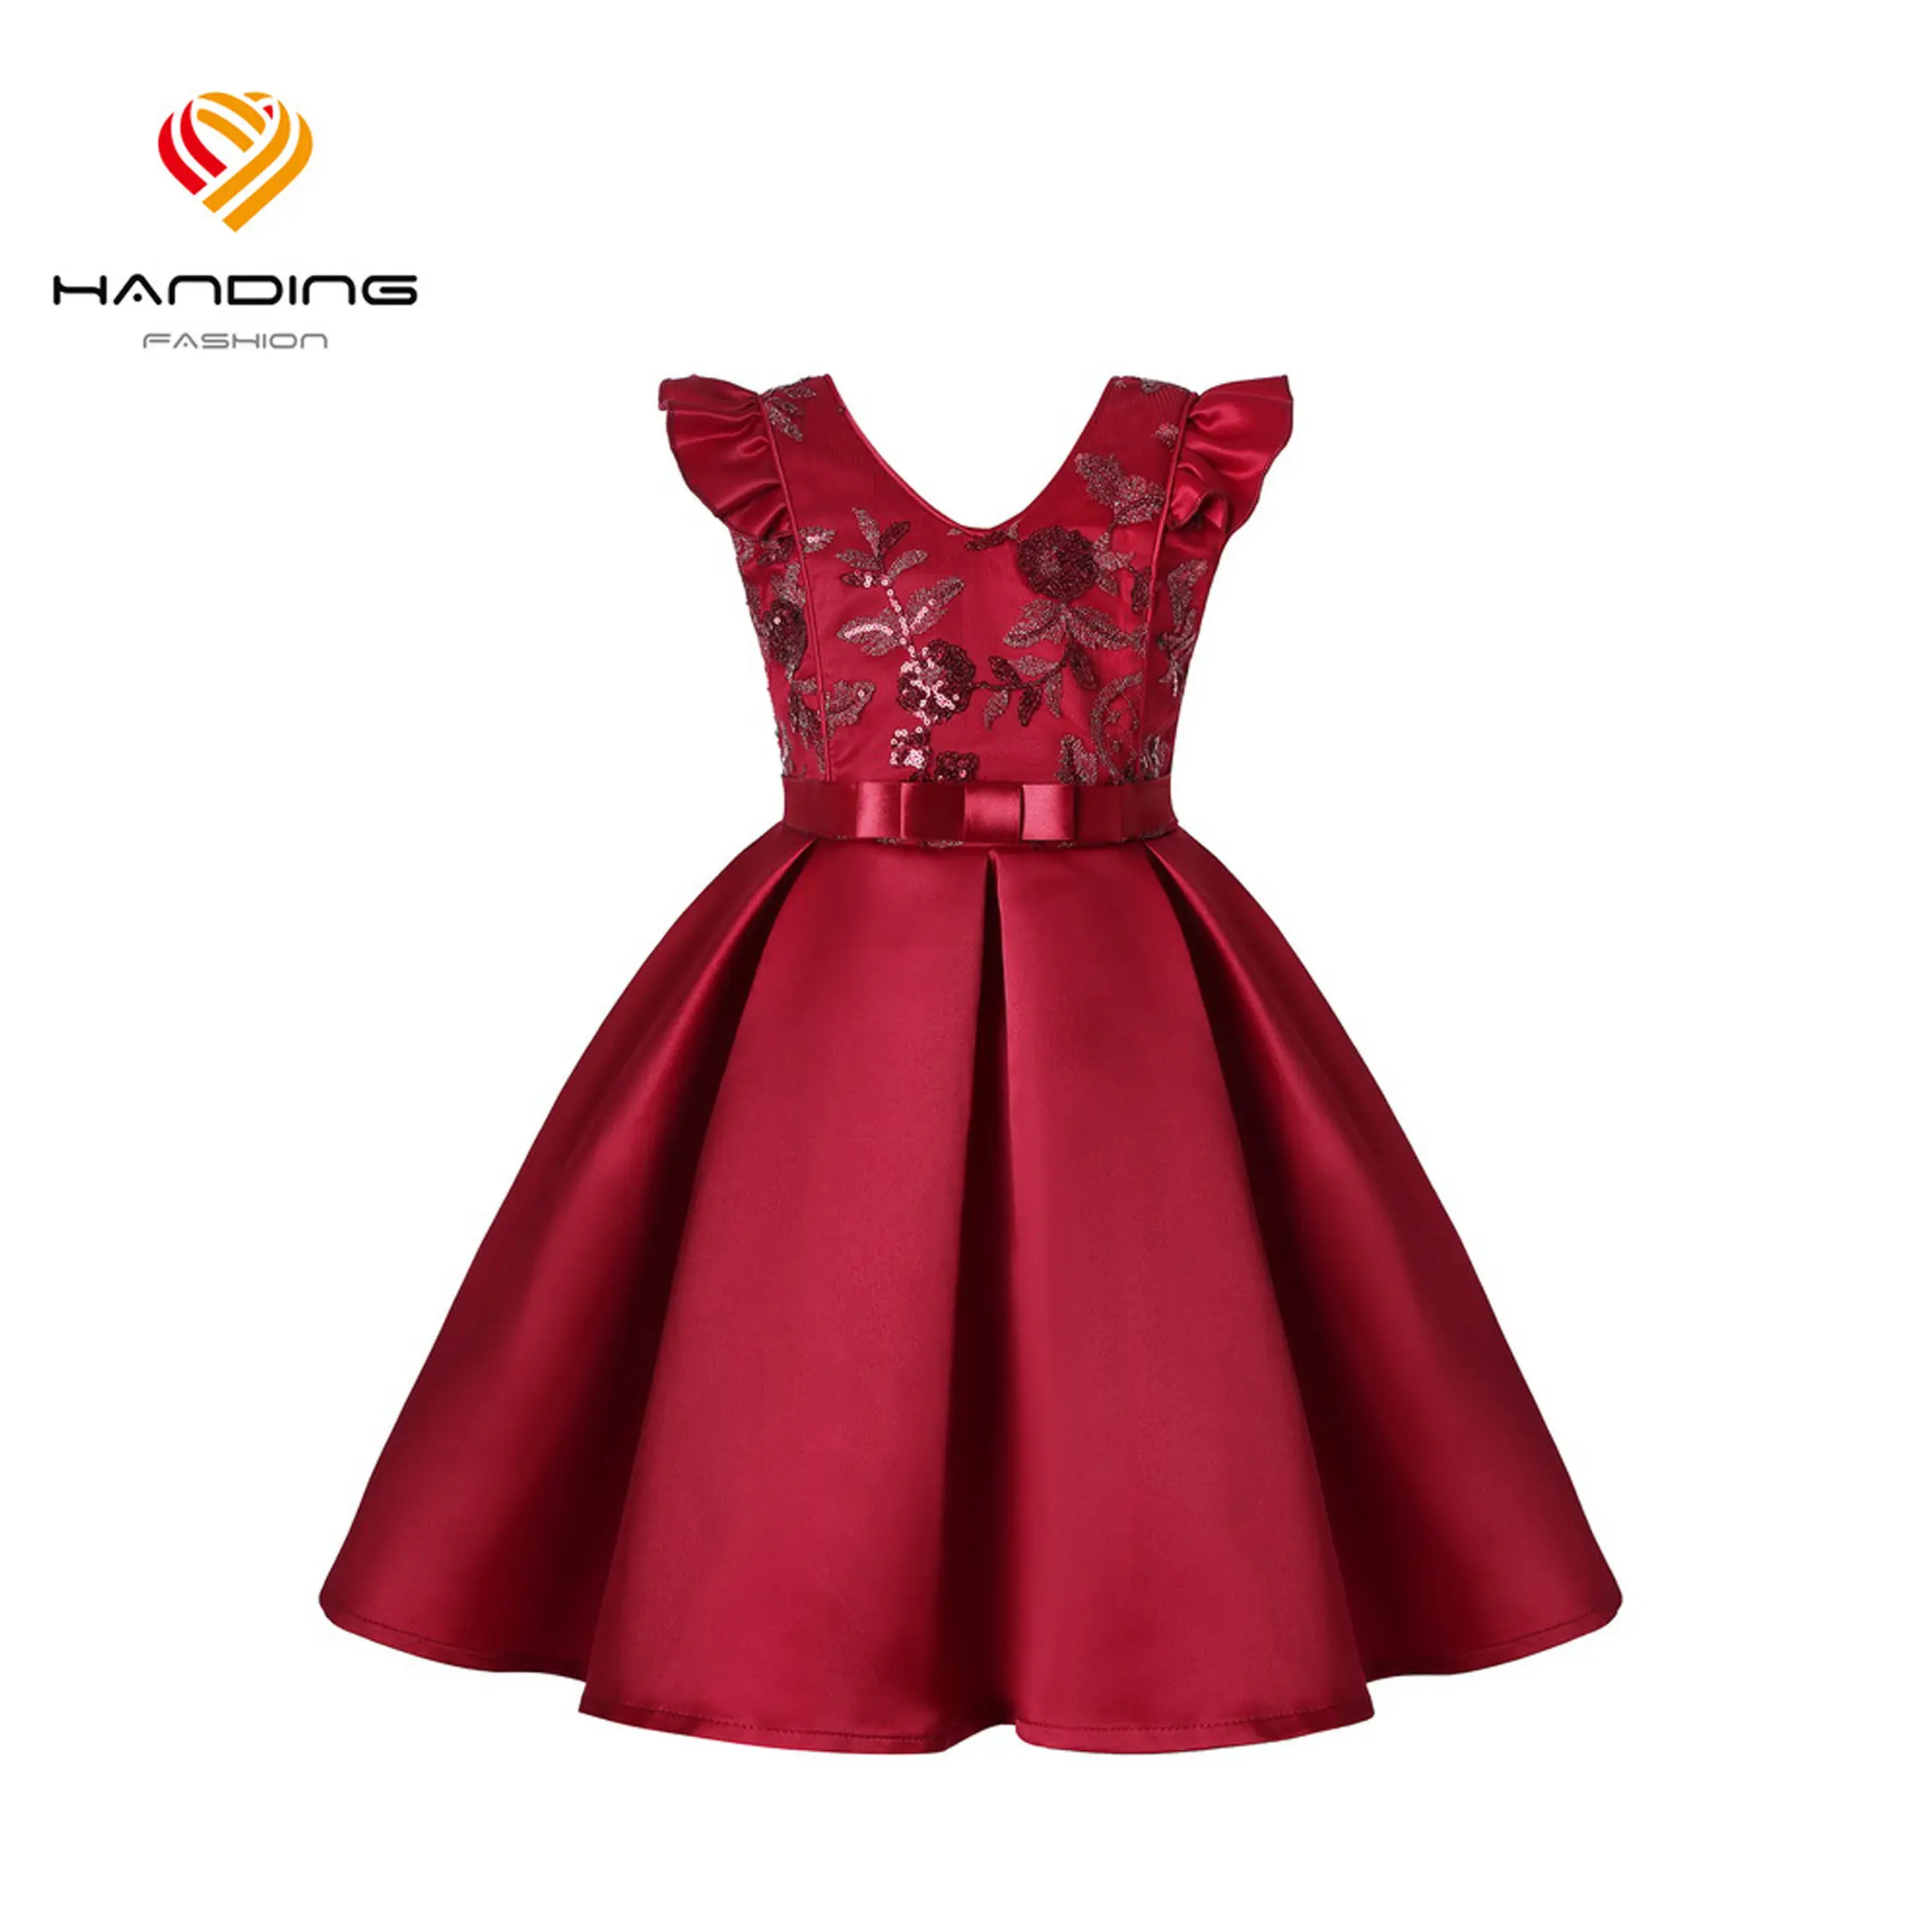 HDKBLQ1923 Offre Spéciale Boule Rouge Robe Enfants belle Manches De Bébé Robes Usage D'été Fille Enfants Parti Robe